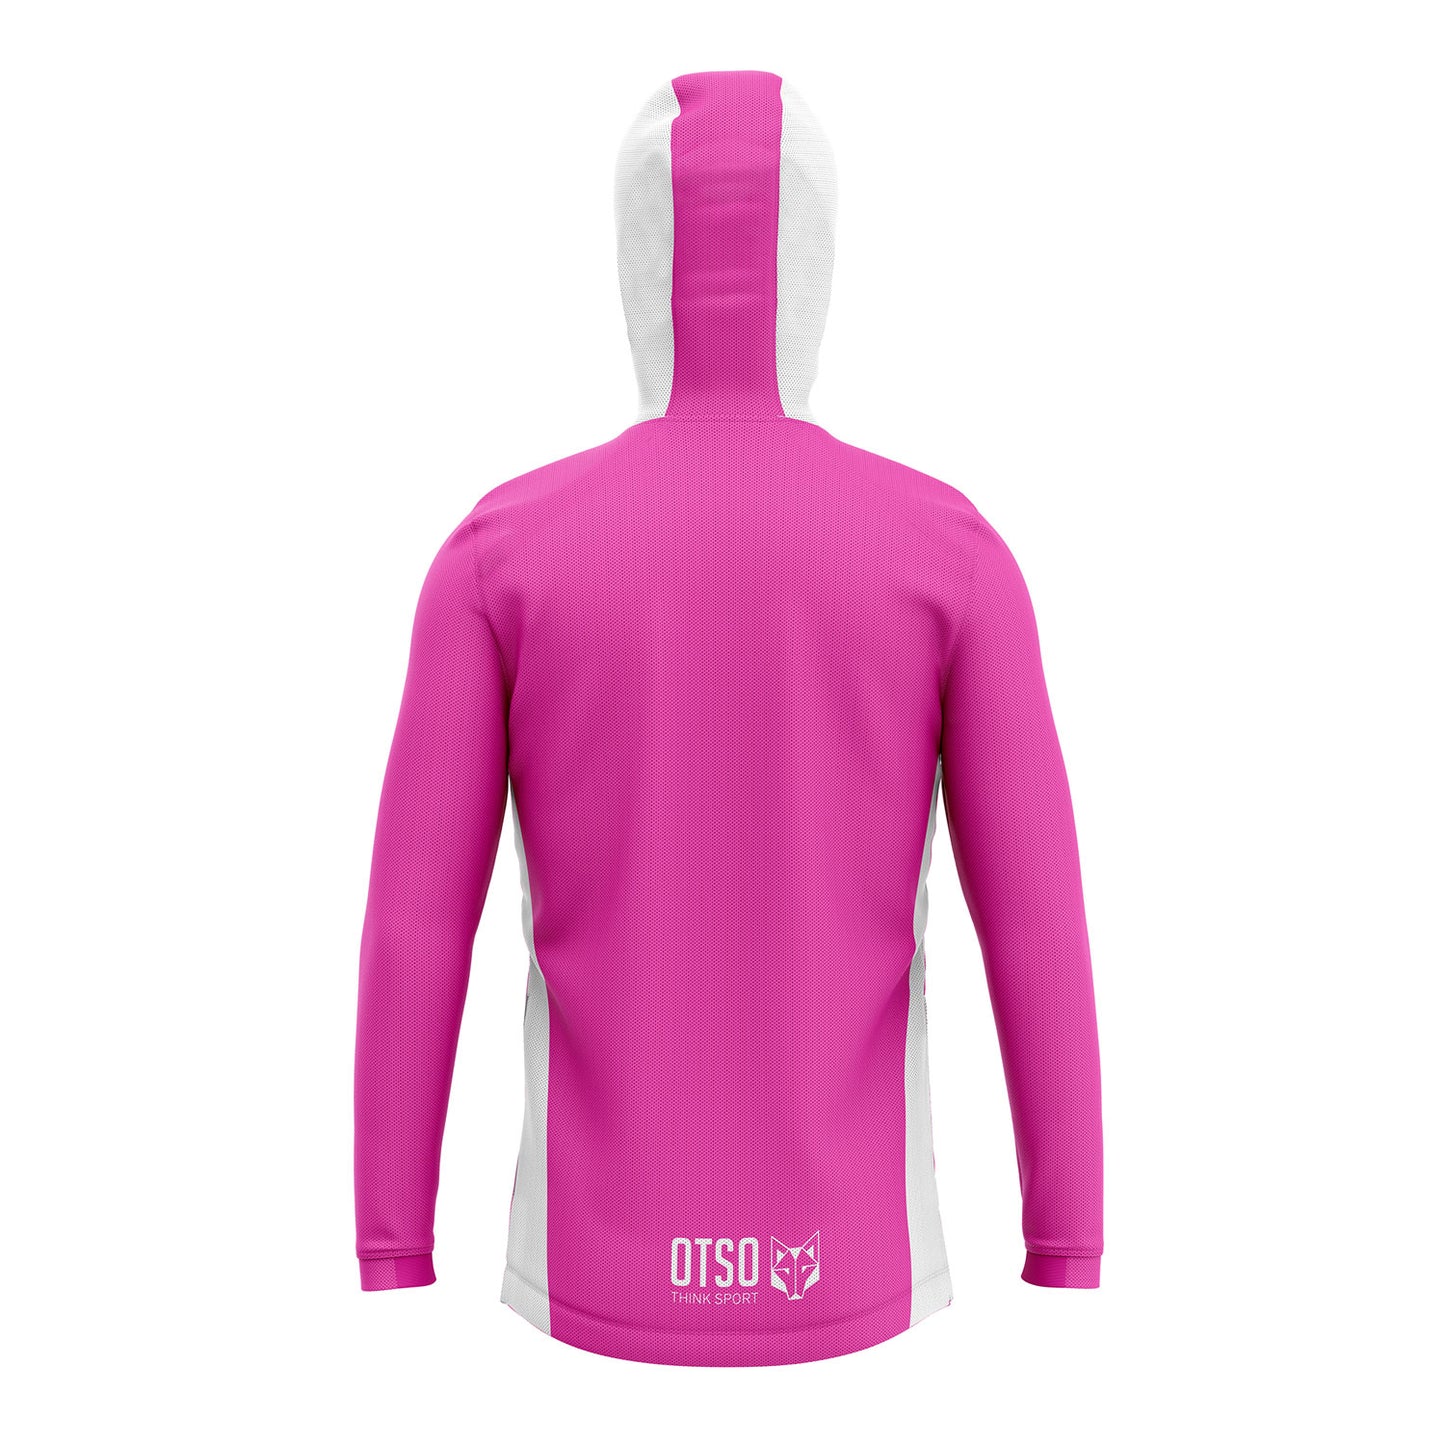 Unisex sport hoodie - Fluo Pink & White